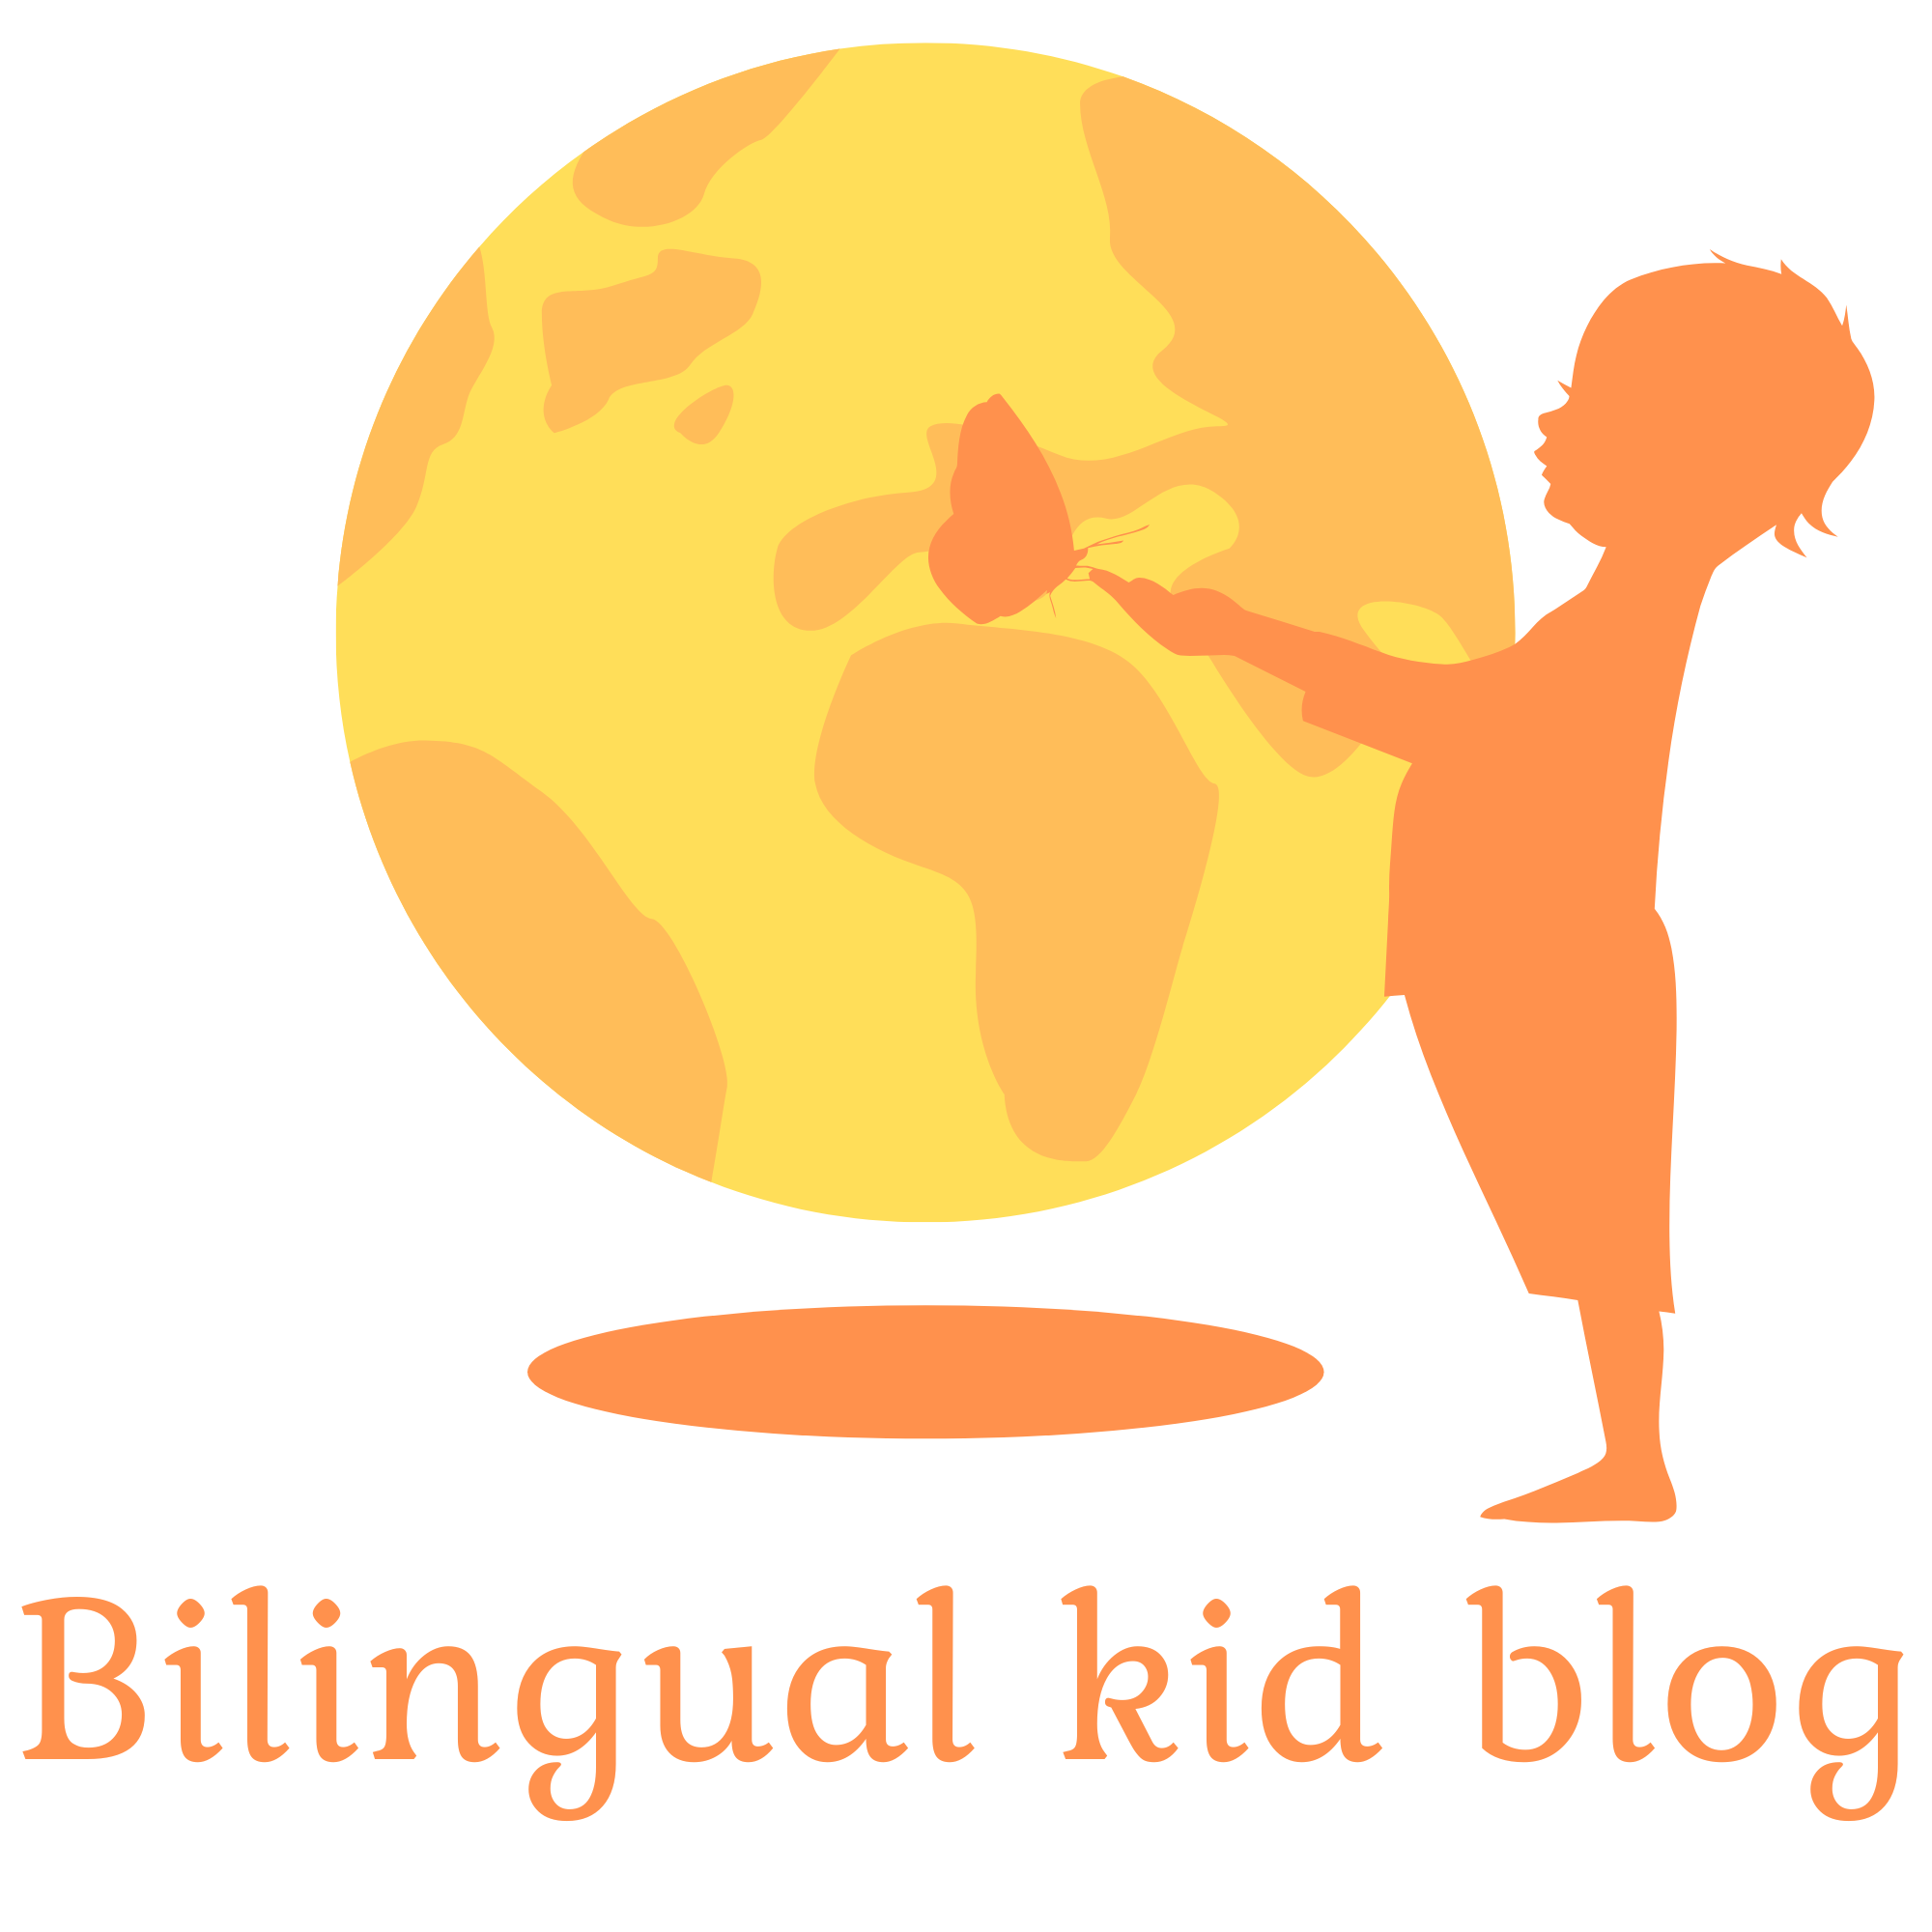 Bilingual kid